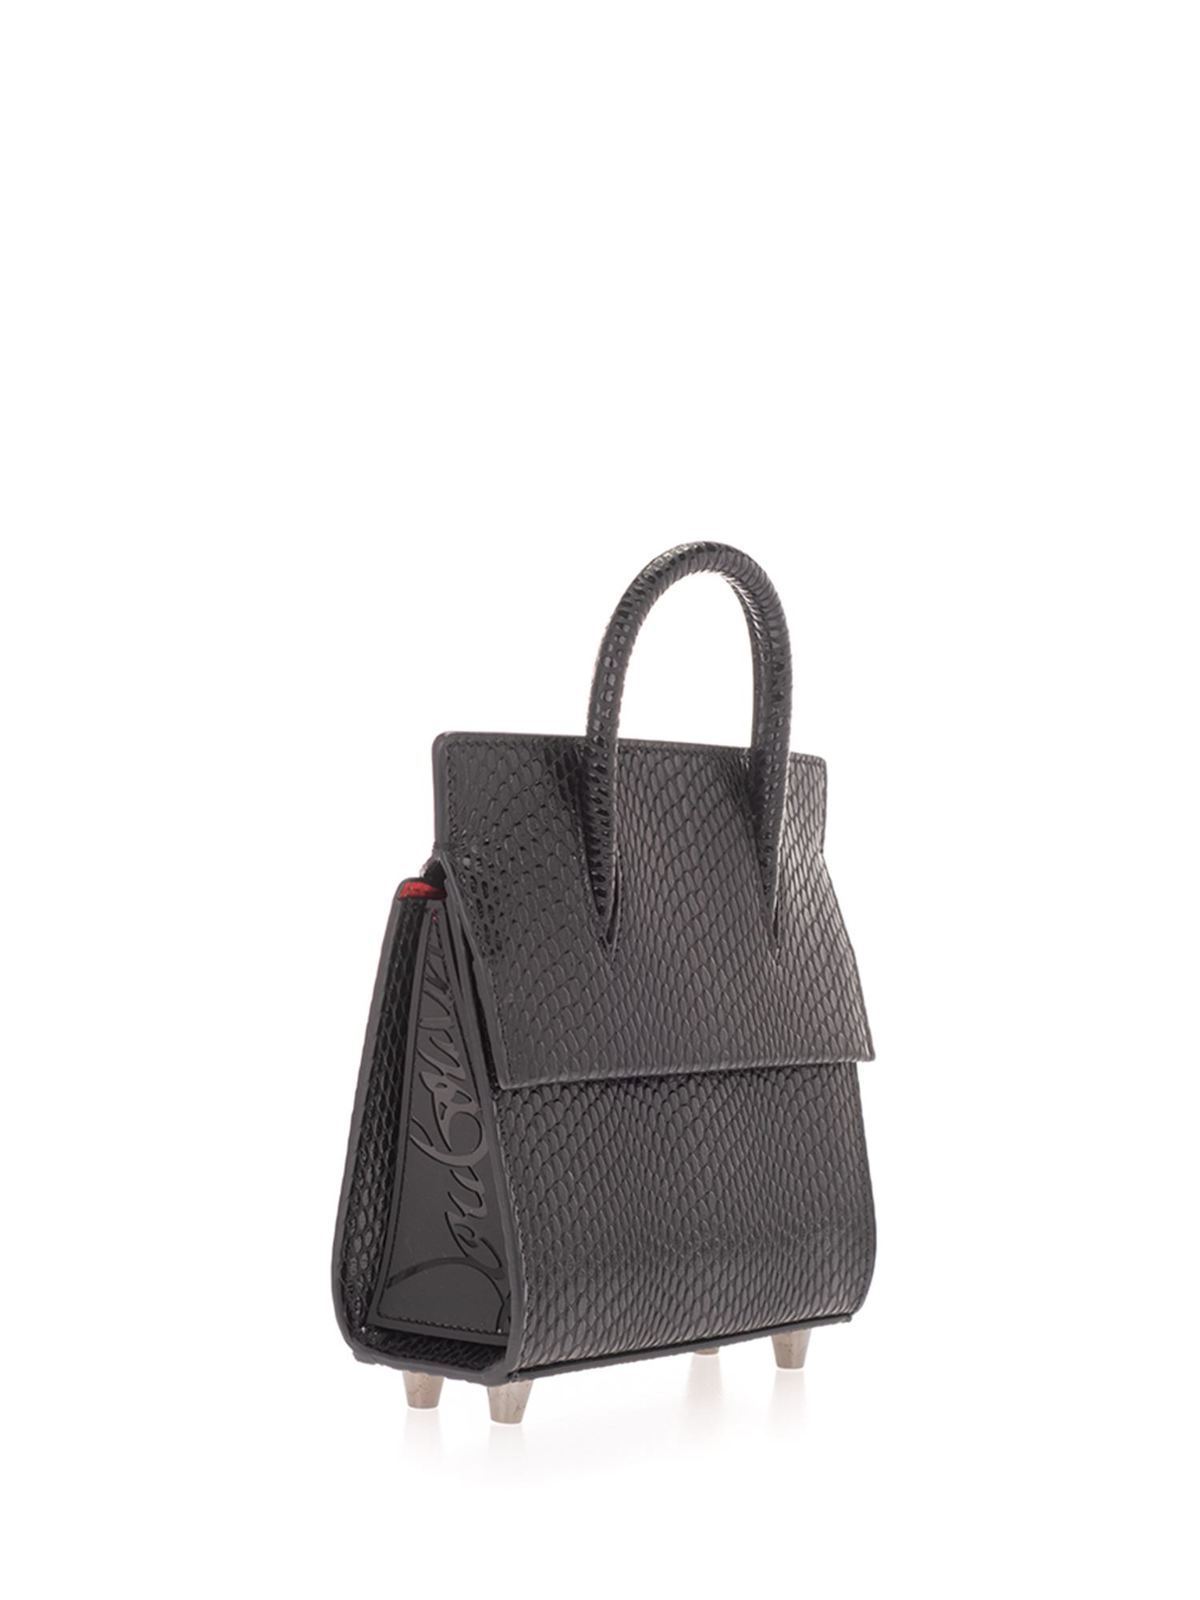 Christian Louboutin Paloma Mini Leather Tote Bag